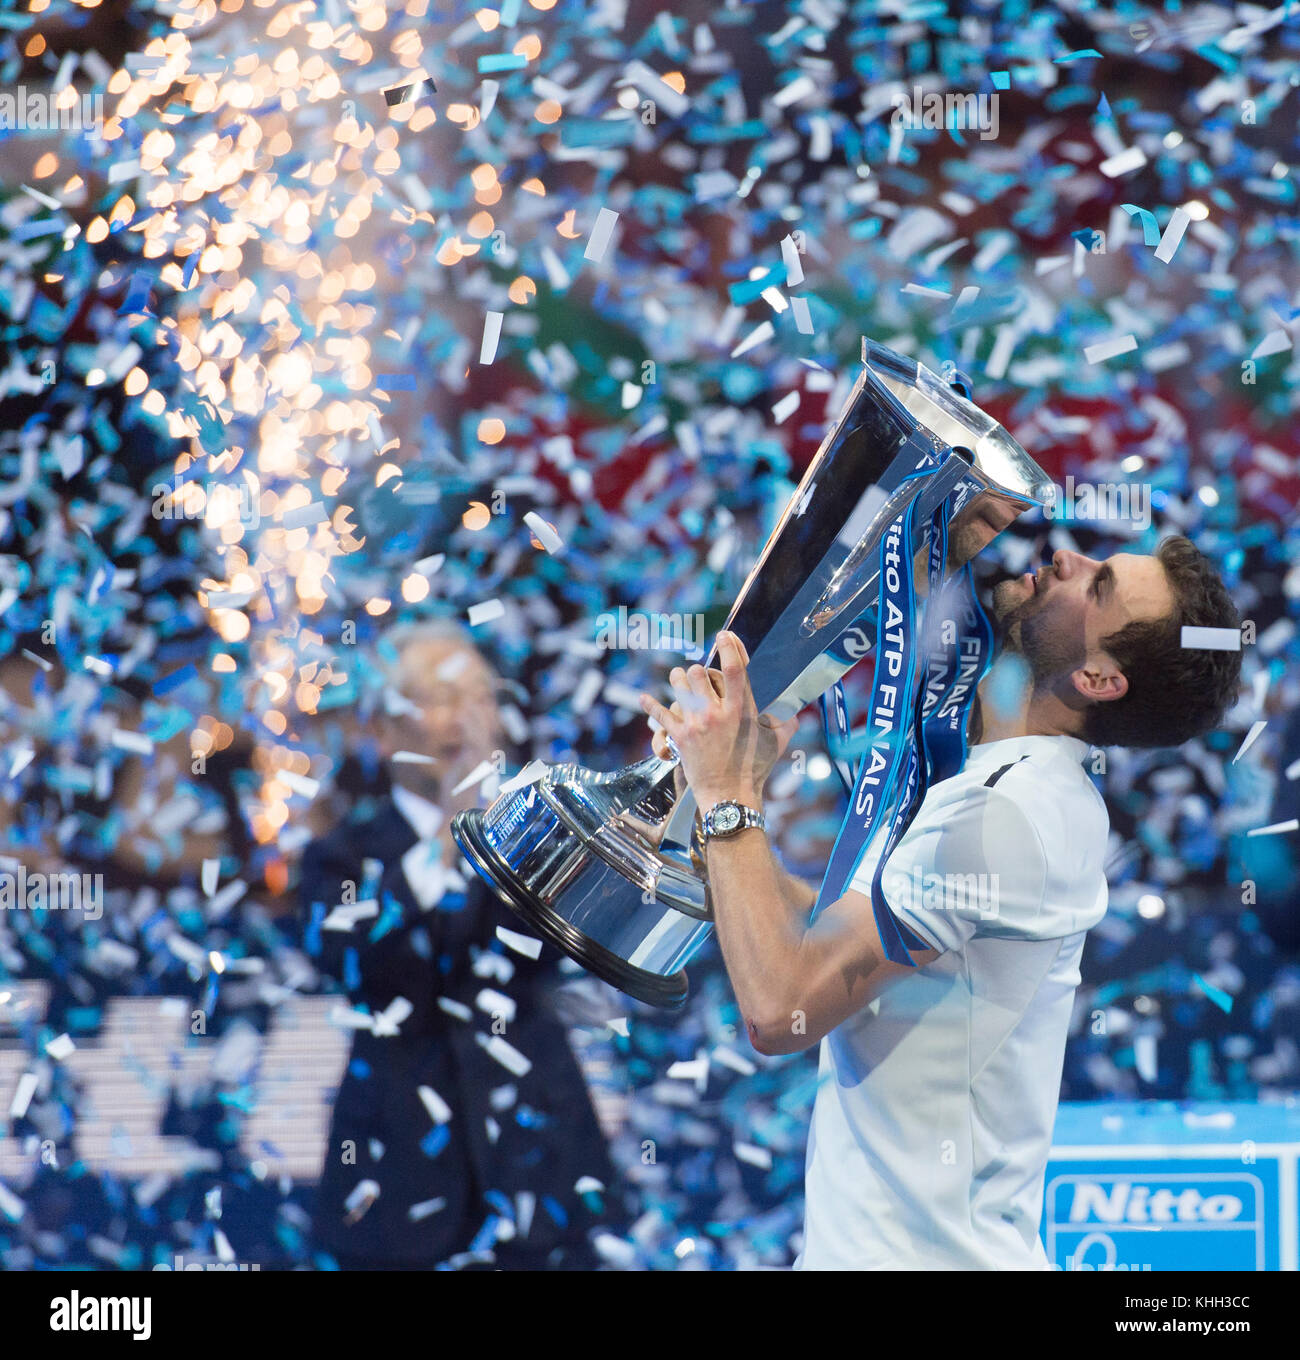 O2, Londres, Royaume-Uni. 19 novembre 2017. Nitto ATP Singles célébrations de la finale sur le terrain central. Crédit : Malcolm Park/Alay Live News. Banque D'Images